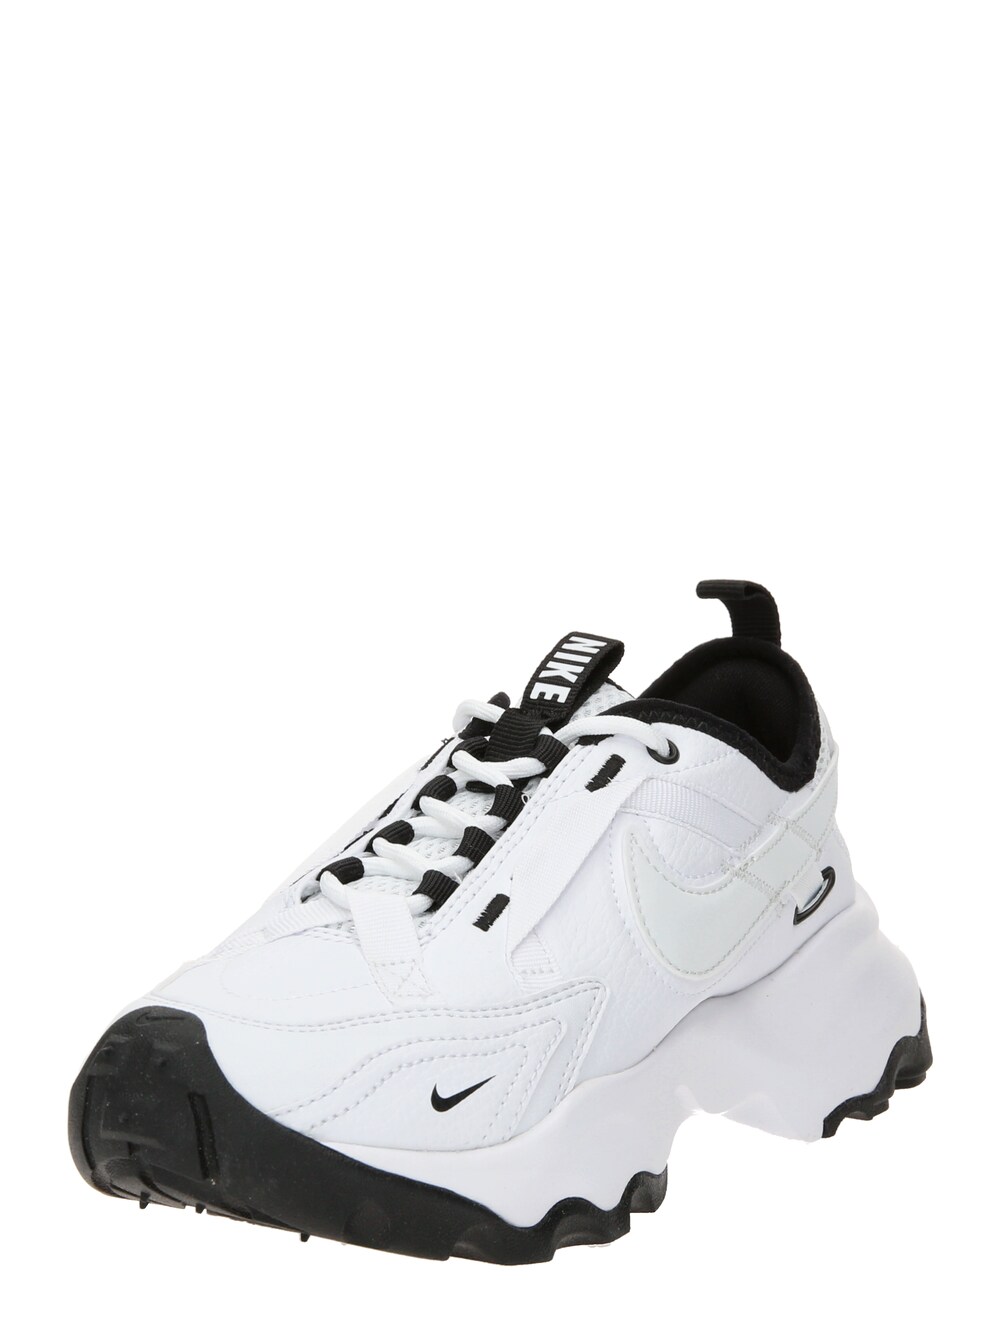 Кроссовки Nike Sportswear TC 7900, белый кроссовки nike tc 7900 white black белый